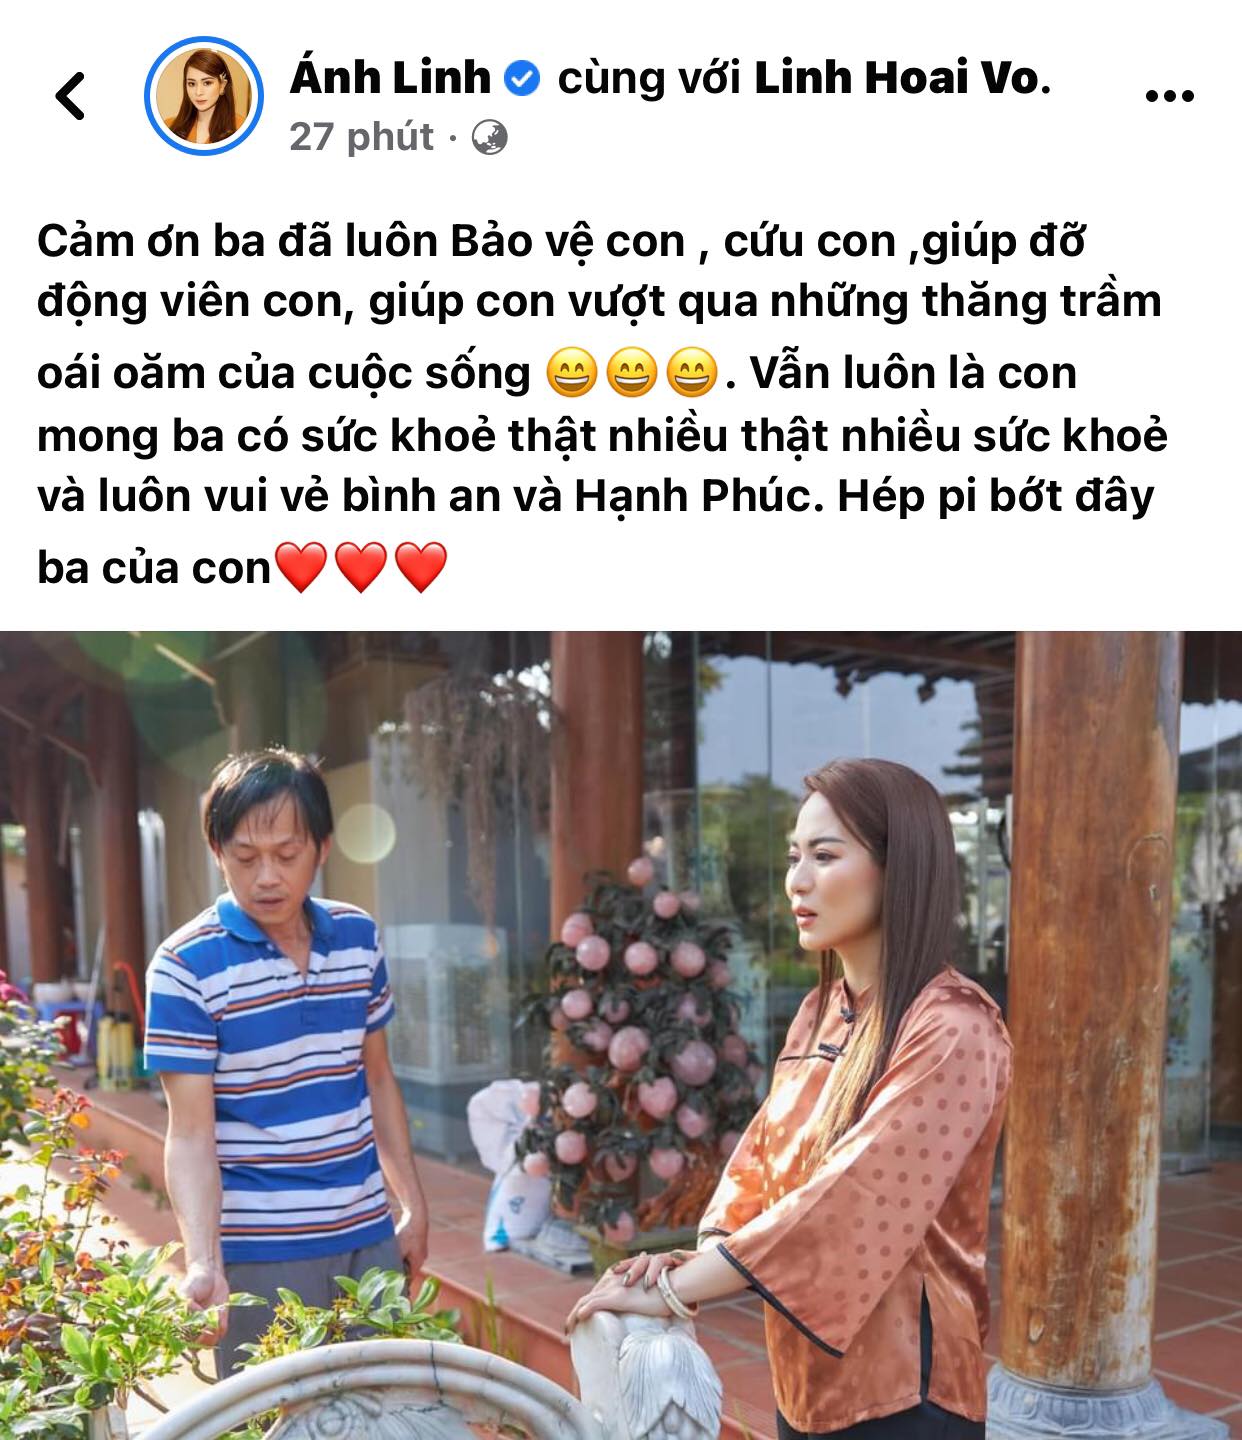 Sau-hua-minh-dat-nam-thu-minh-nhi-cung-cac-con-nuoi-dong-loat-lam-1-dieu-cho-hoai-linh-gay-chu-y